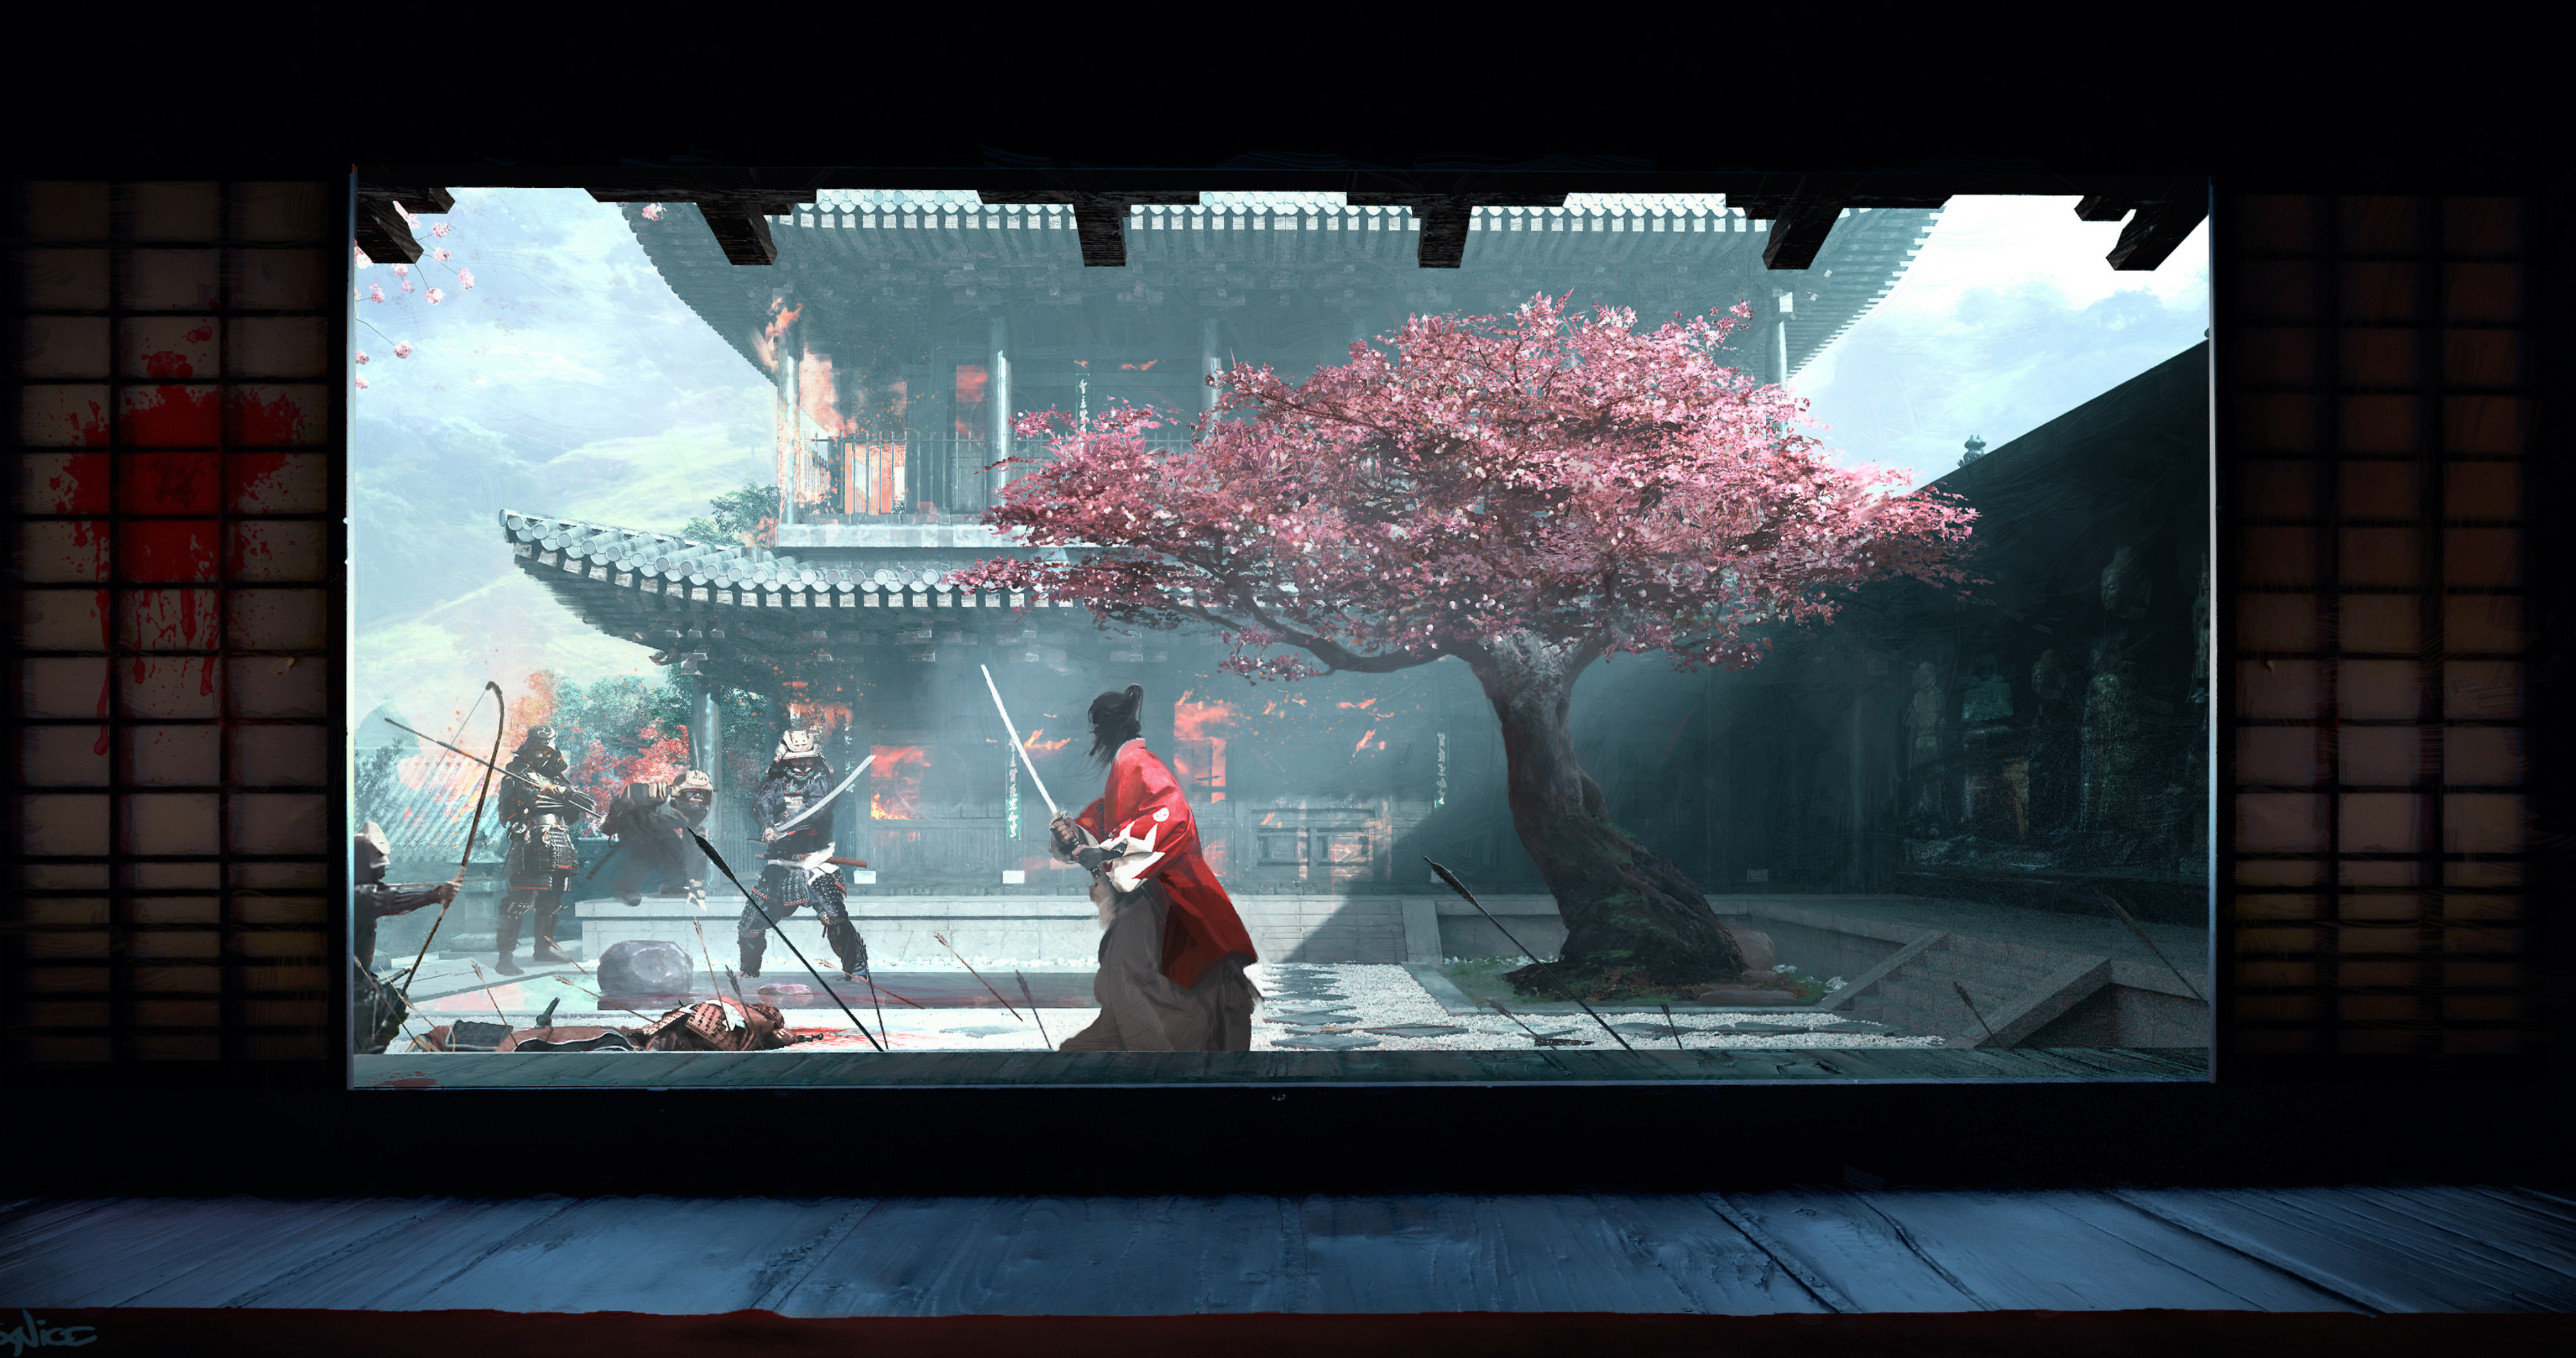 樱花树的院子里拔刀对峙的日本<span style='color:red;'>忍者</span>和武士的场景插画壁纸